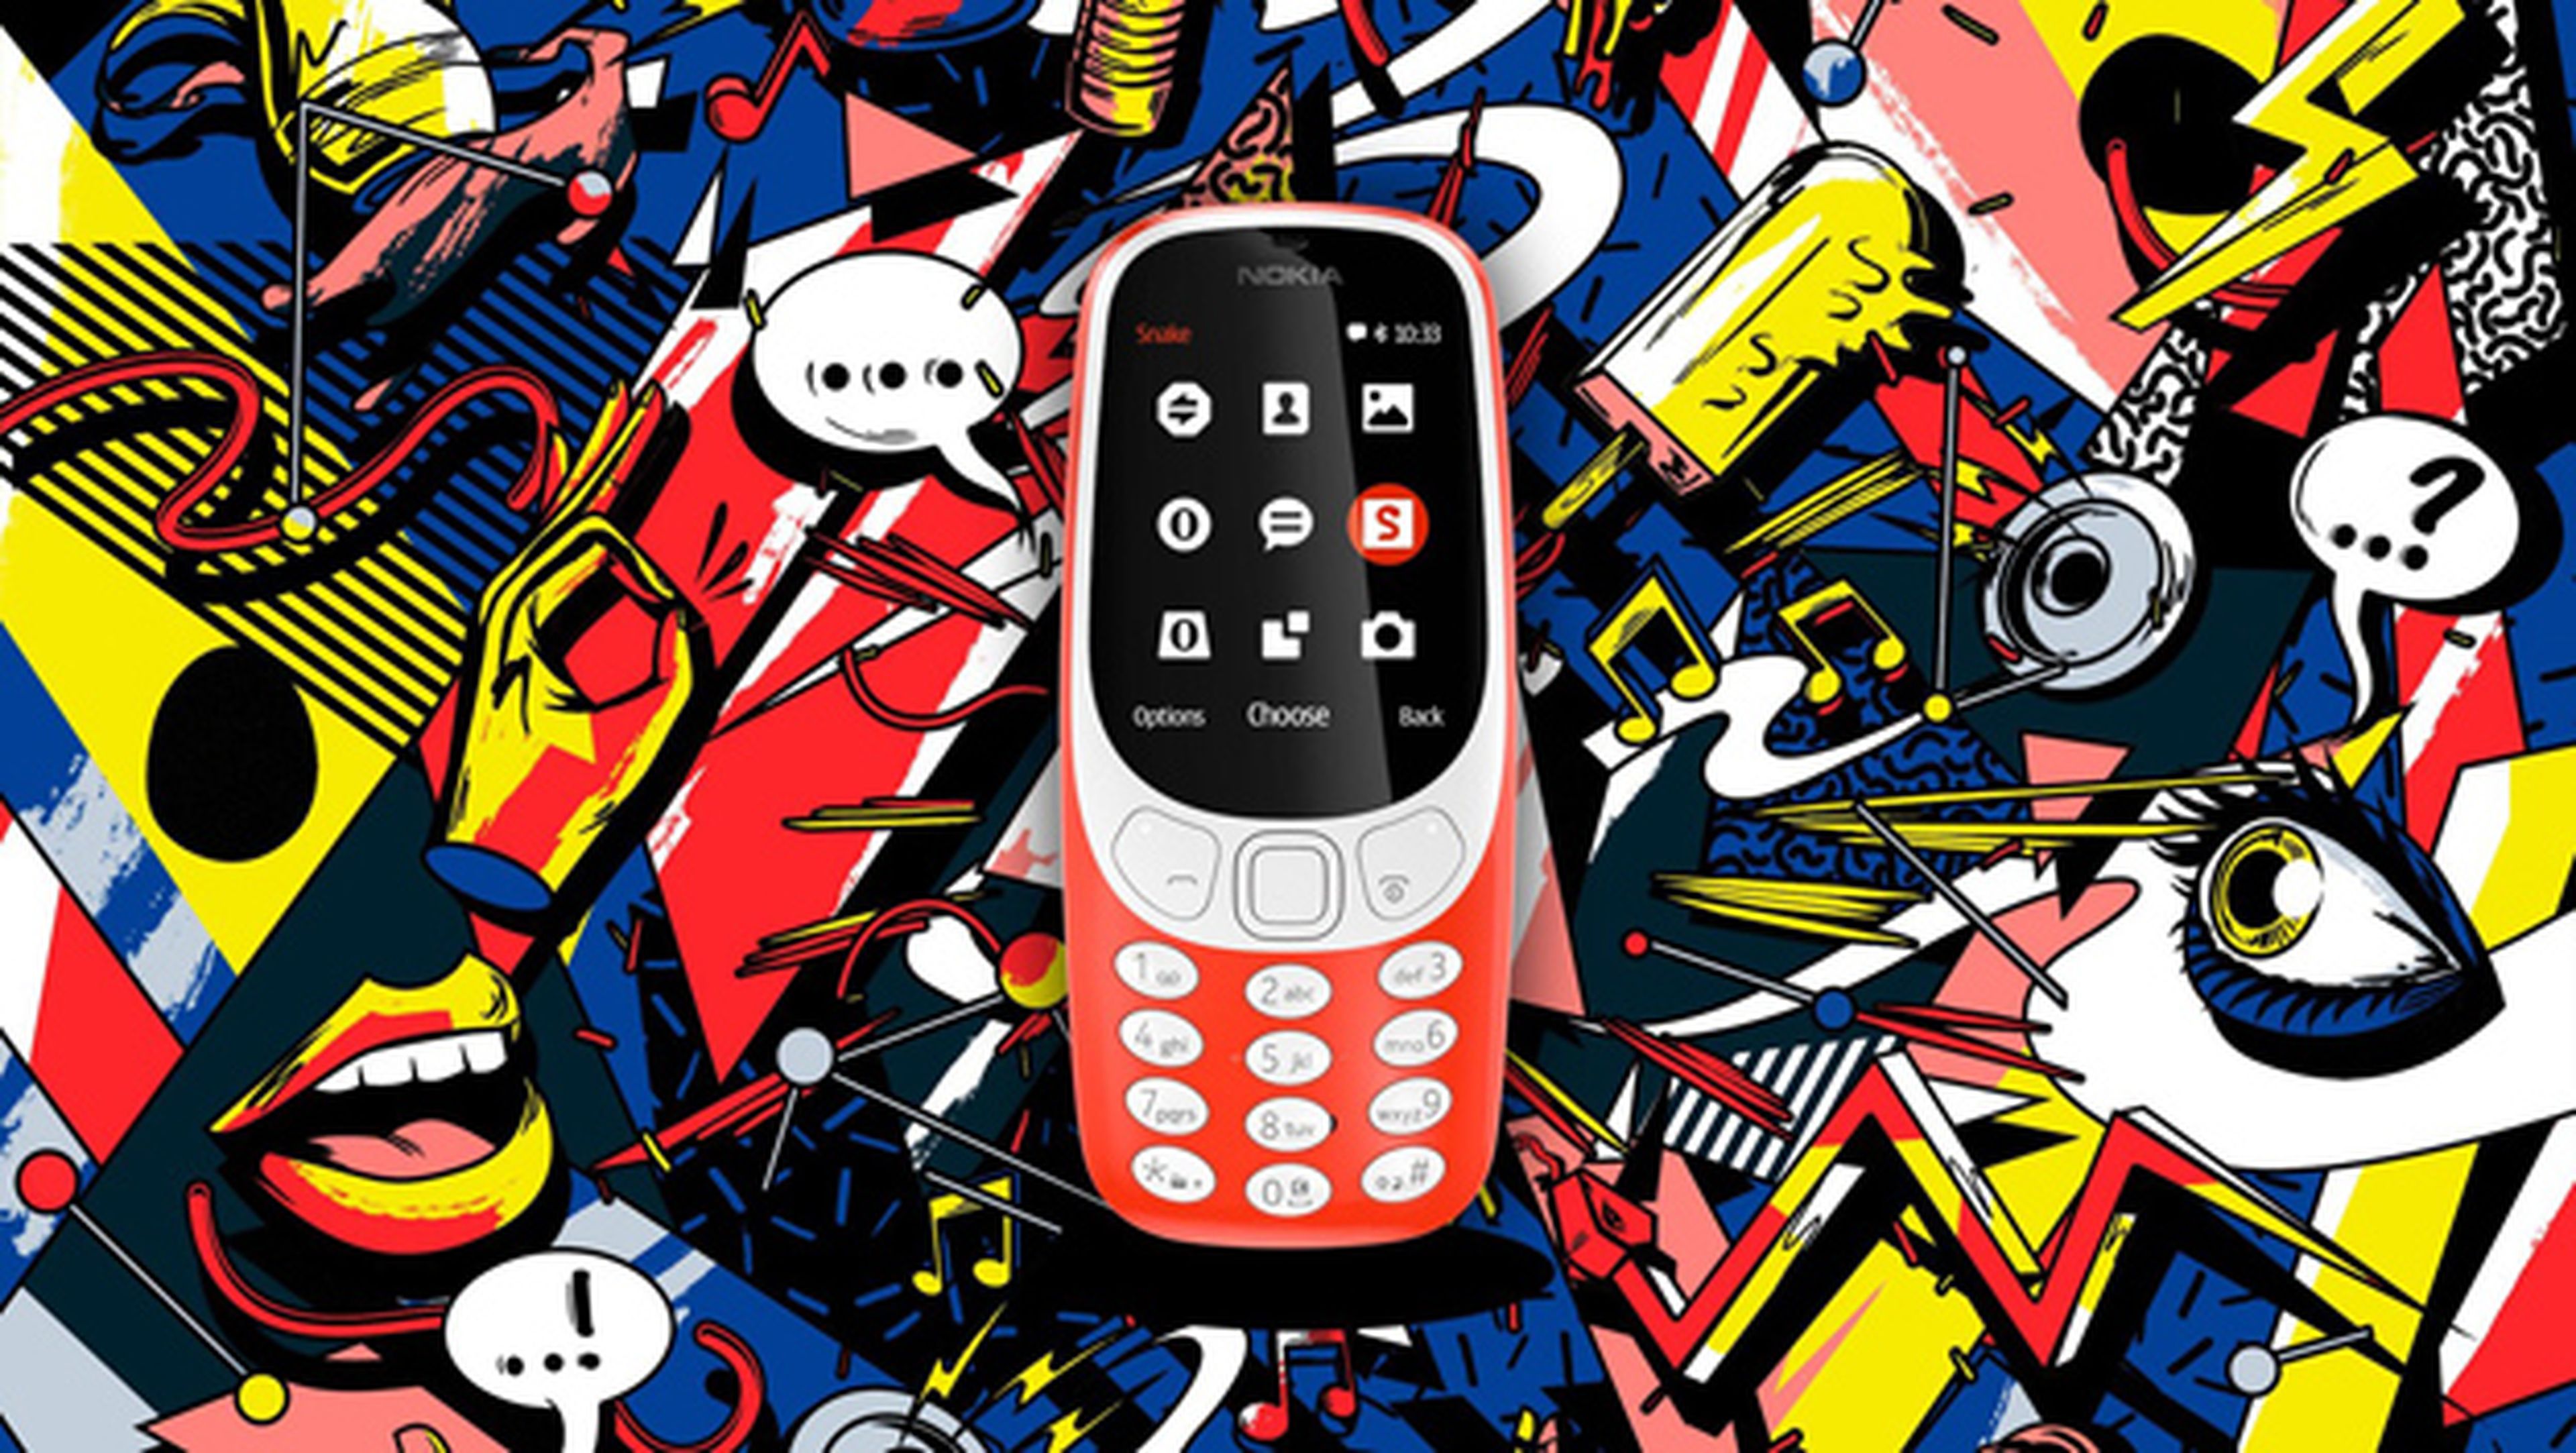 Dónde y cuándo se podrá comprar el Nokia 3310 en España